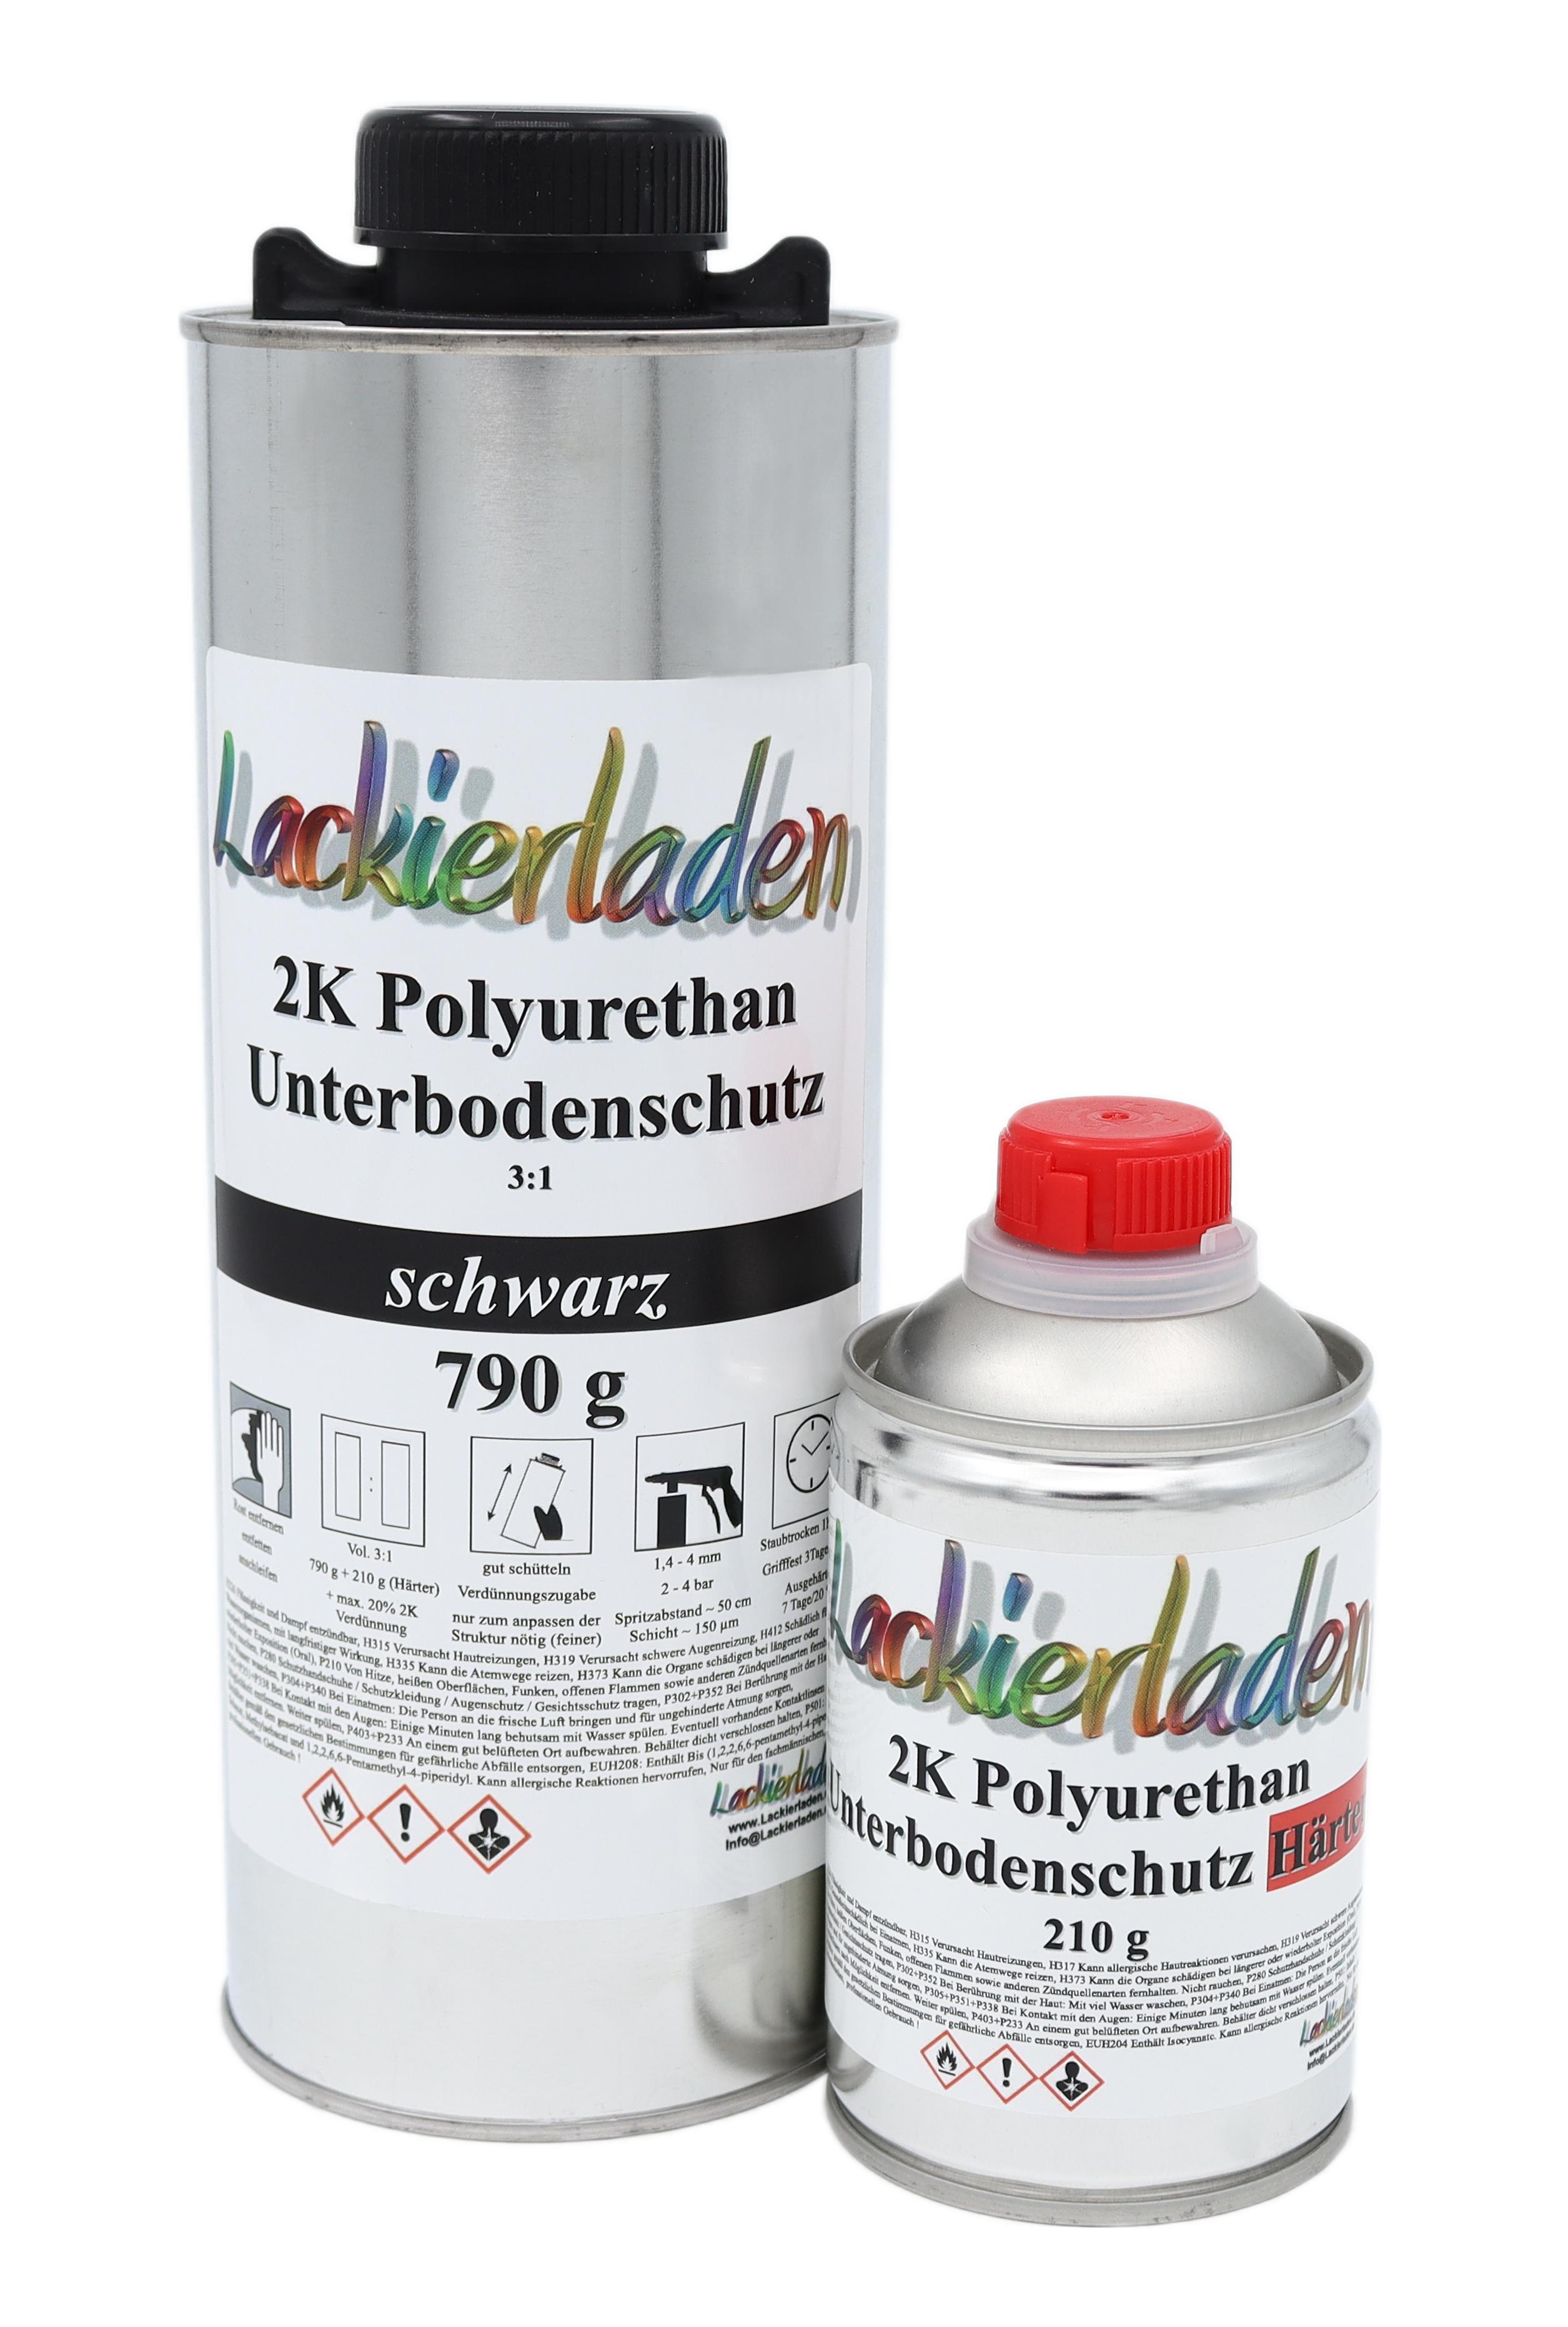 2K Polyurethan Unterbodenschutz schwarz inkl. Härter 3:1 790 g + 210 g | UBS 2 K